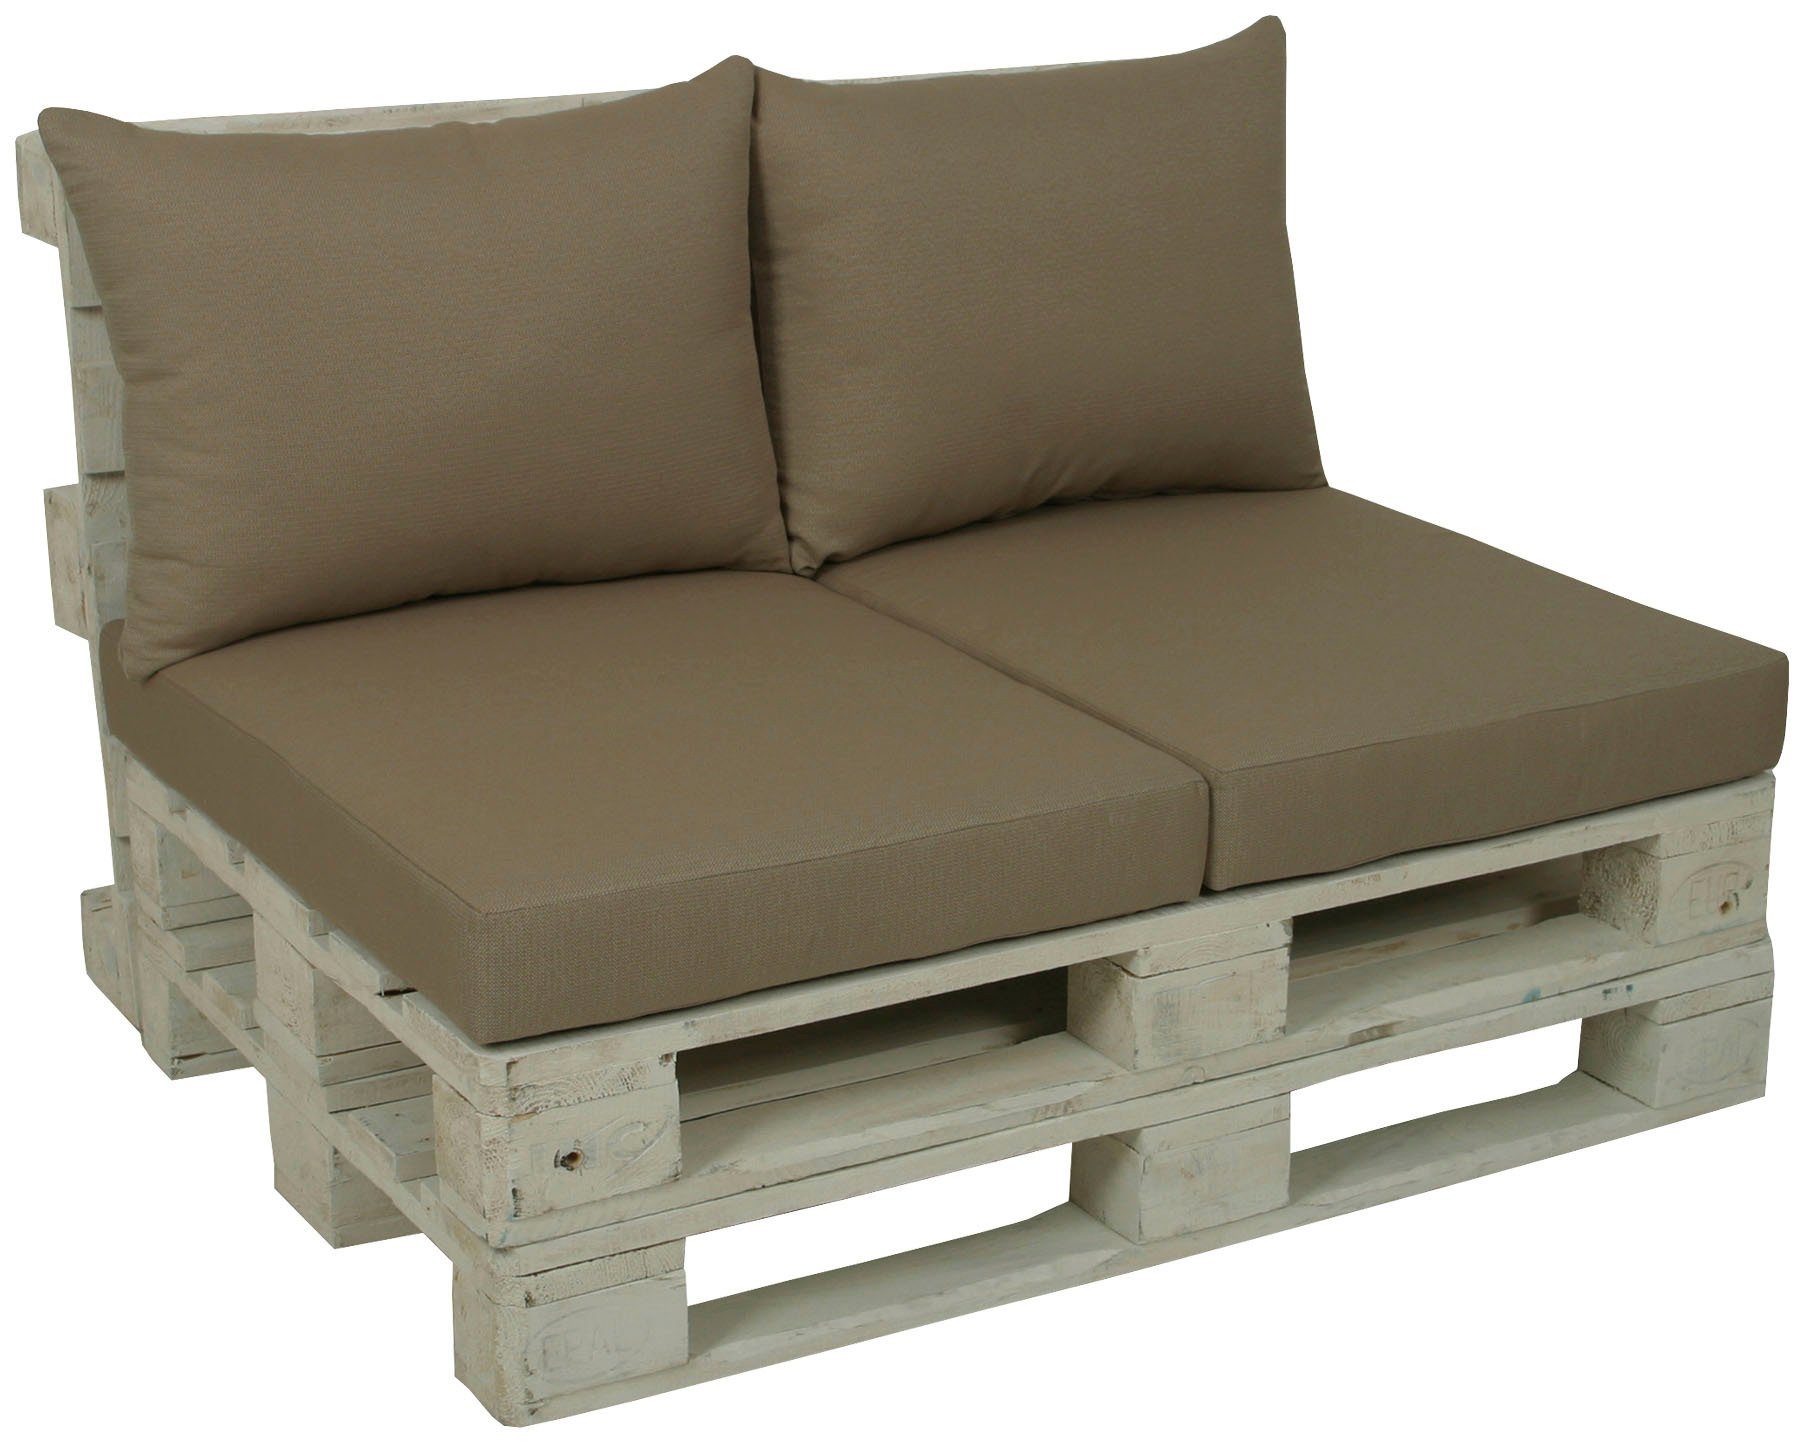 GO-DE Palettenkissen, 60x80 cm, 12 cm gepolstert, 2 Sitz- und 2 Rückenkissen für 1 Palette | Dekokissen